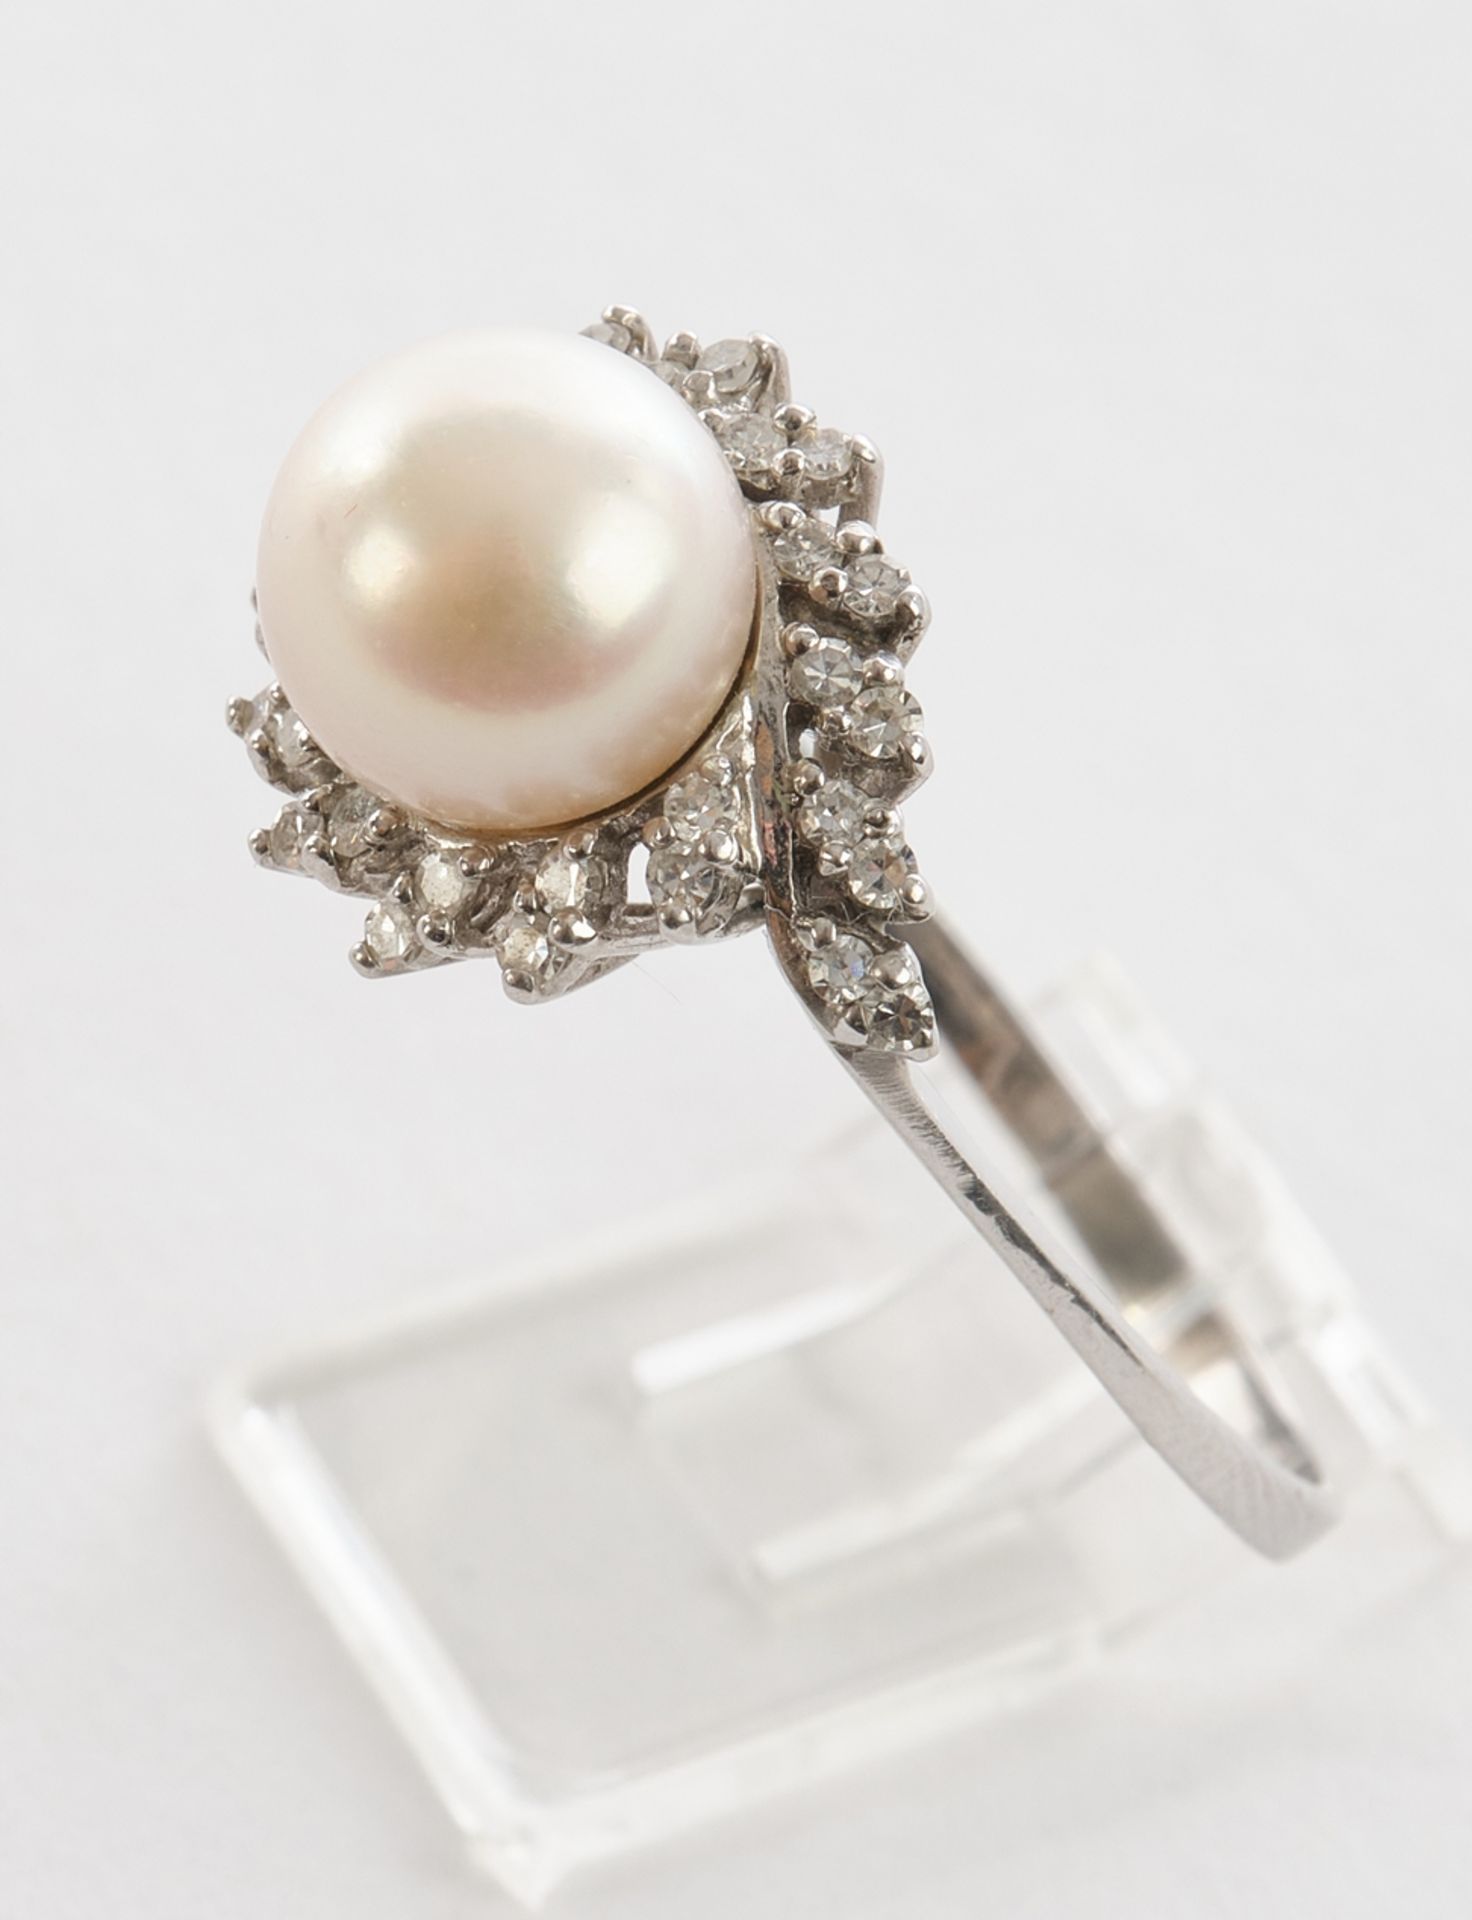 Blütenring, WG 750 geprüft, mit Perle und Brillanten, 31 Achtkantdiamanten (ein Stein fehlt), 4.1 g - Bild 2 aus 3